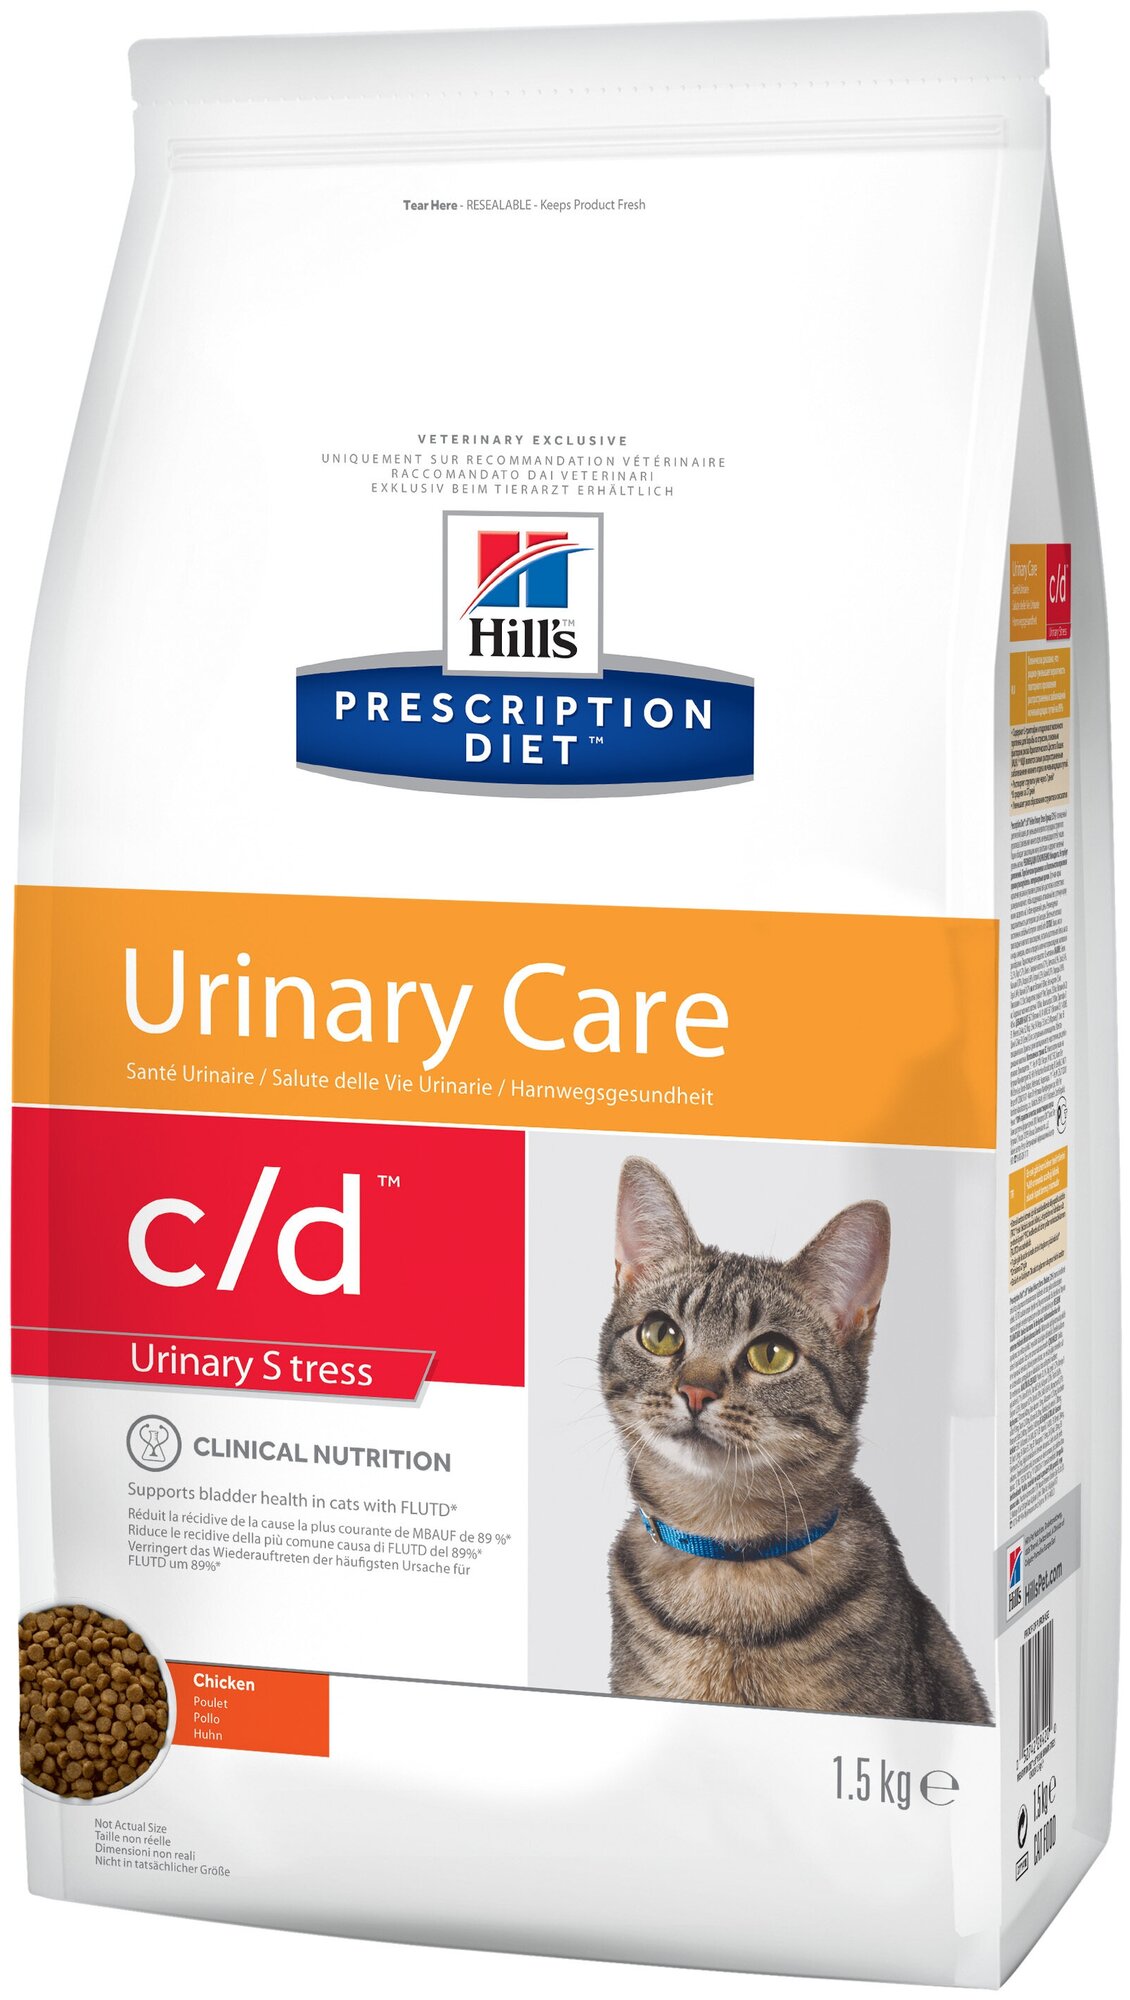 Сухой корм для кошек Hill's C/D Feline Urinary Stress лечение цистита и МКБ, с курицей 1.5 кг - фотография № 2